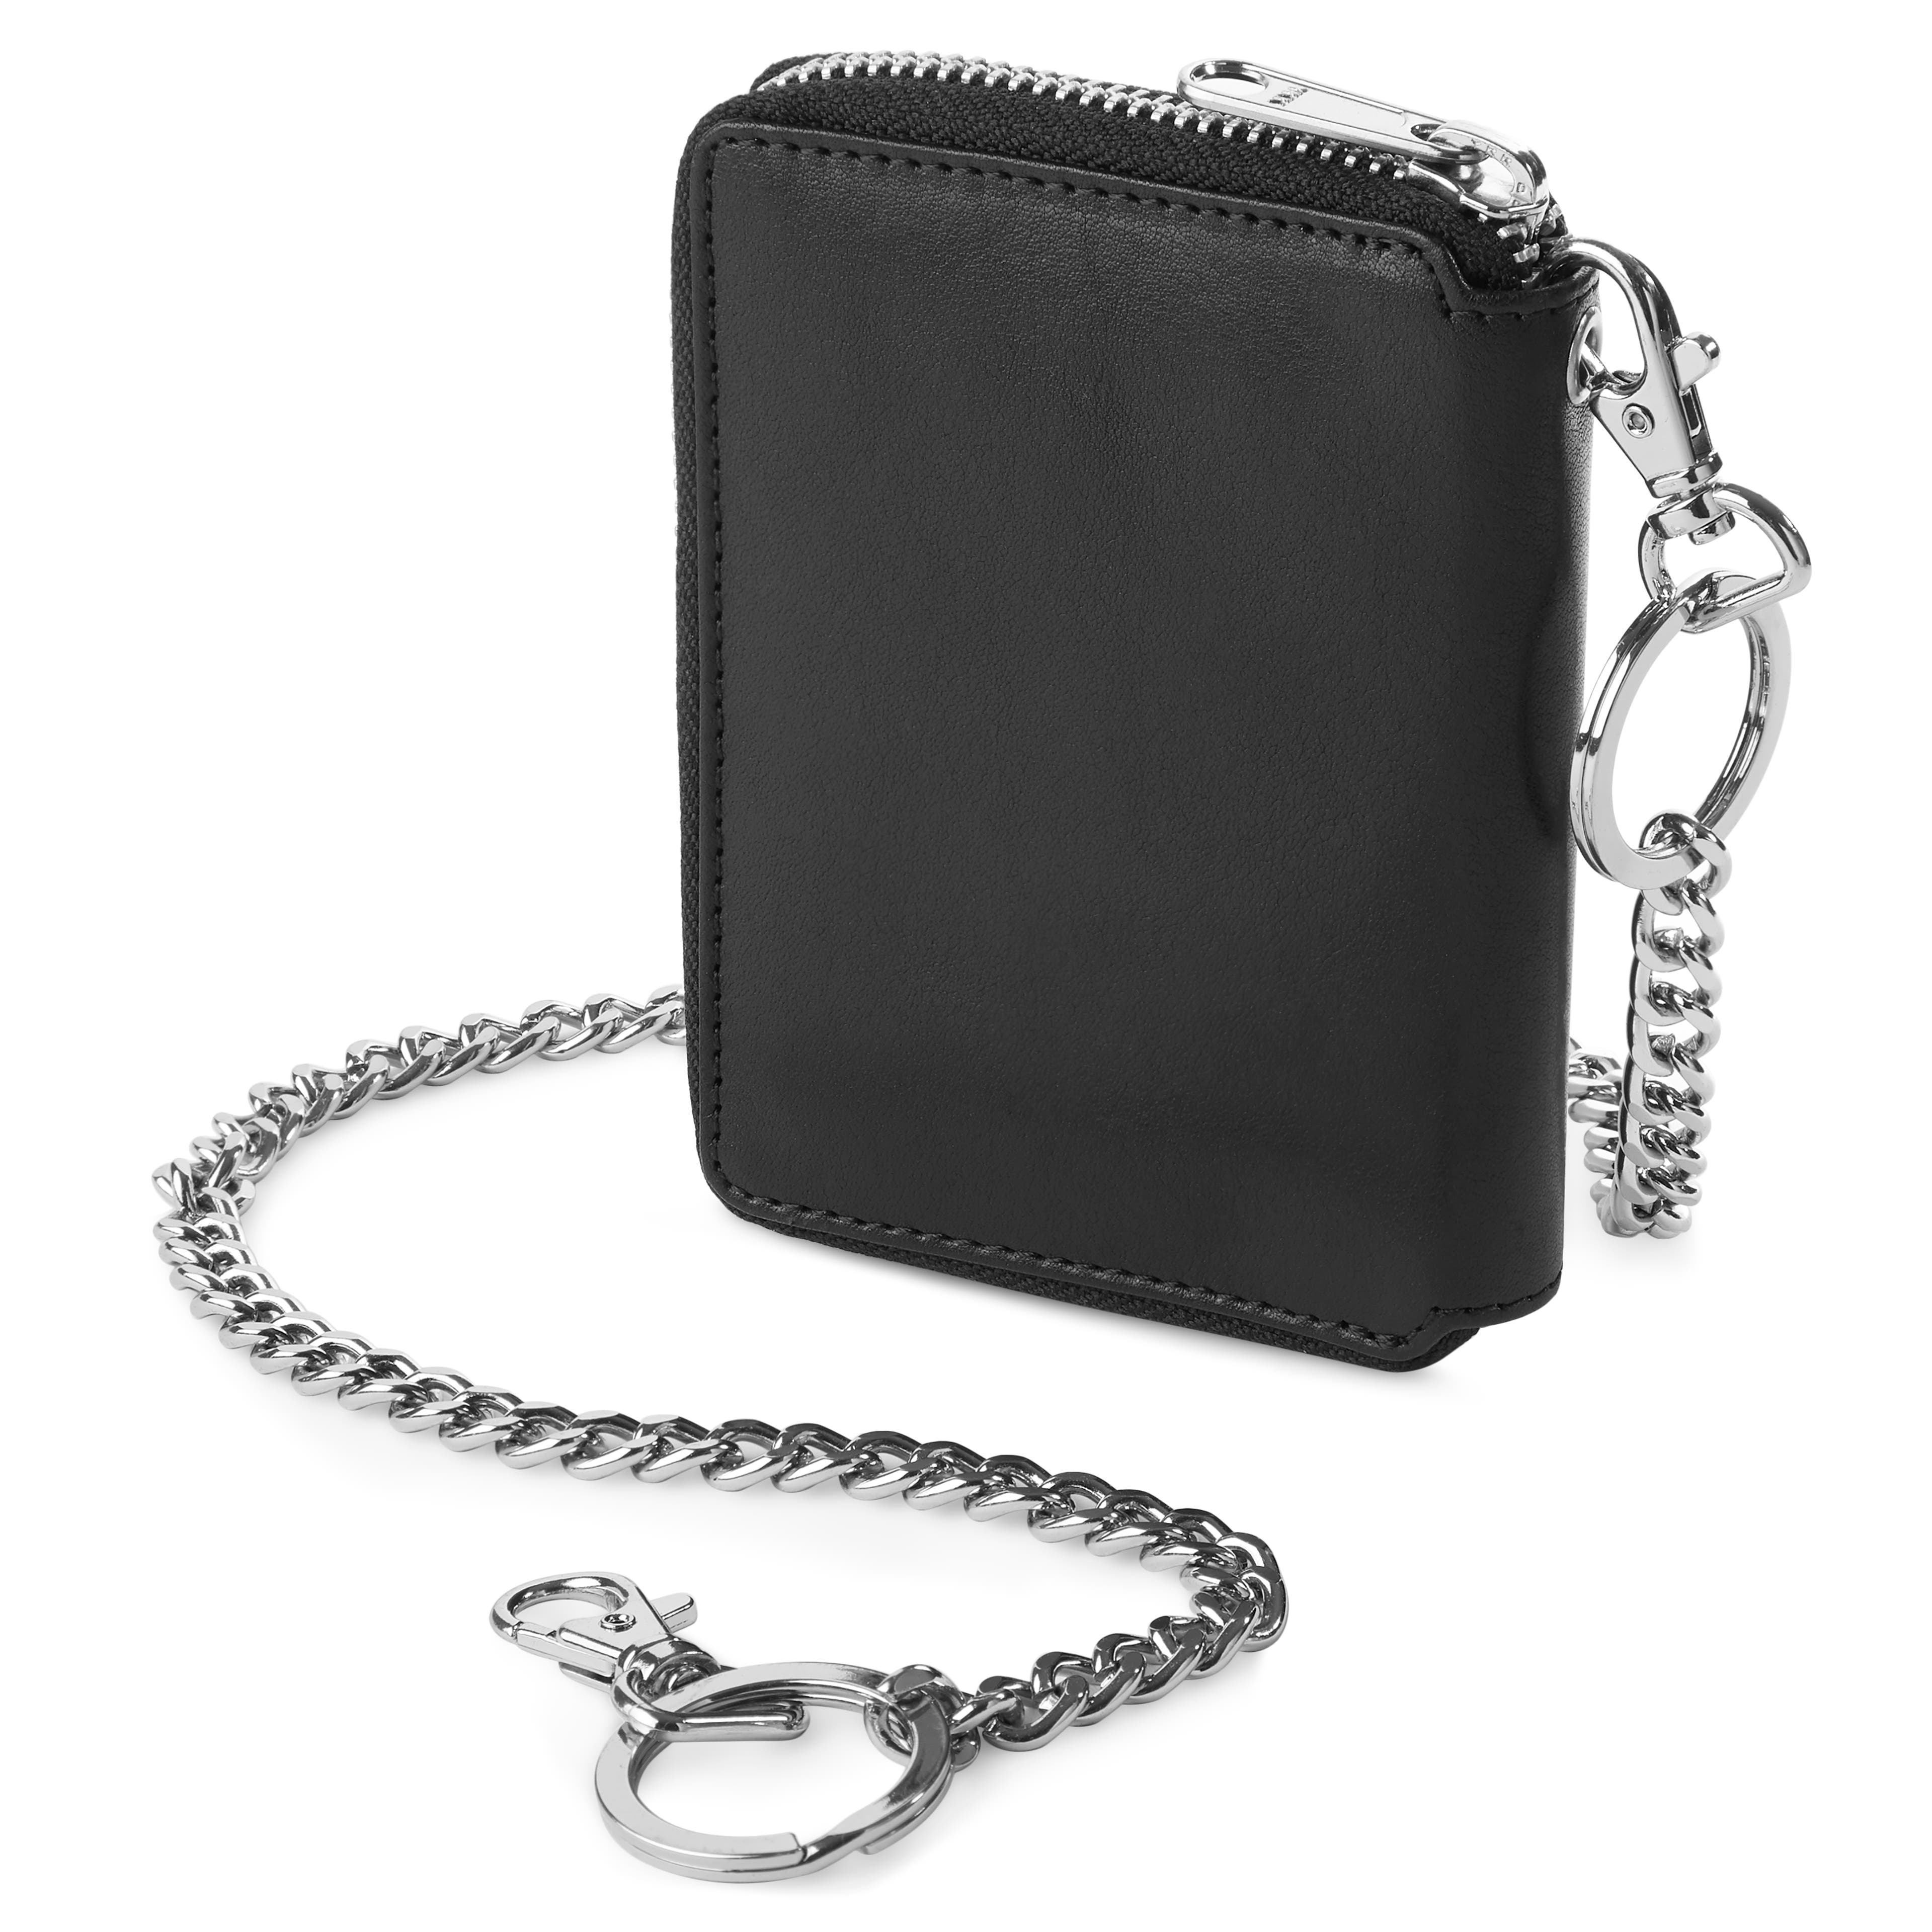 Larson Black Leather RFID Wallet